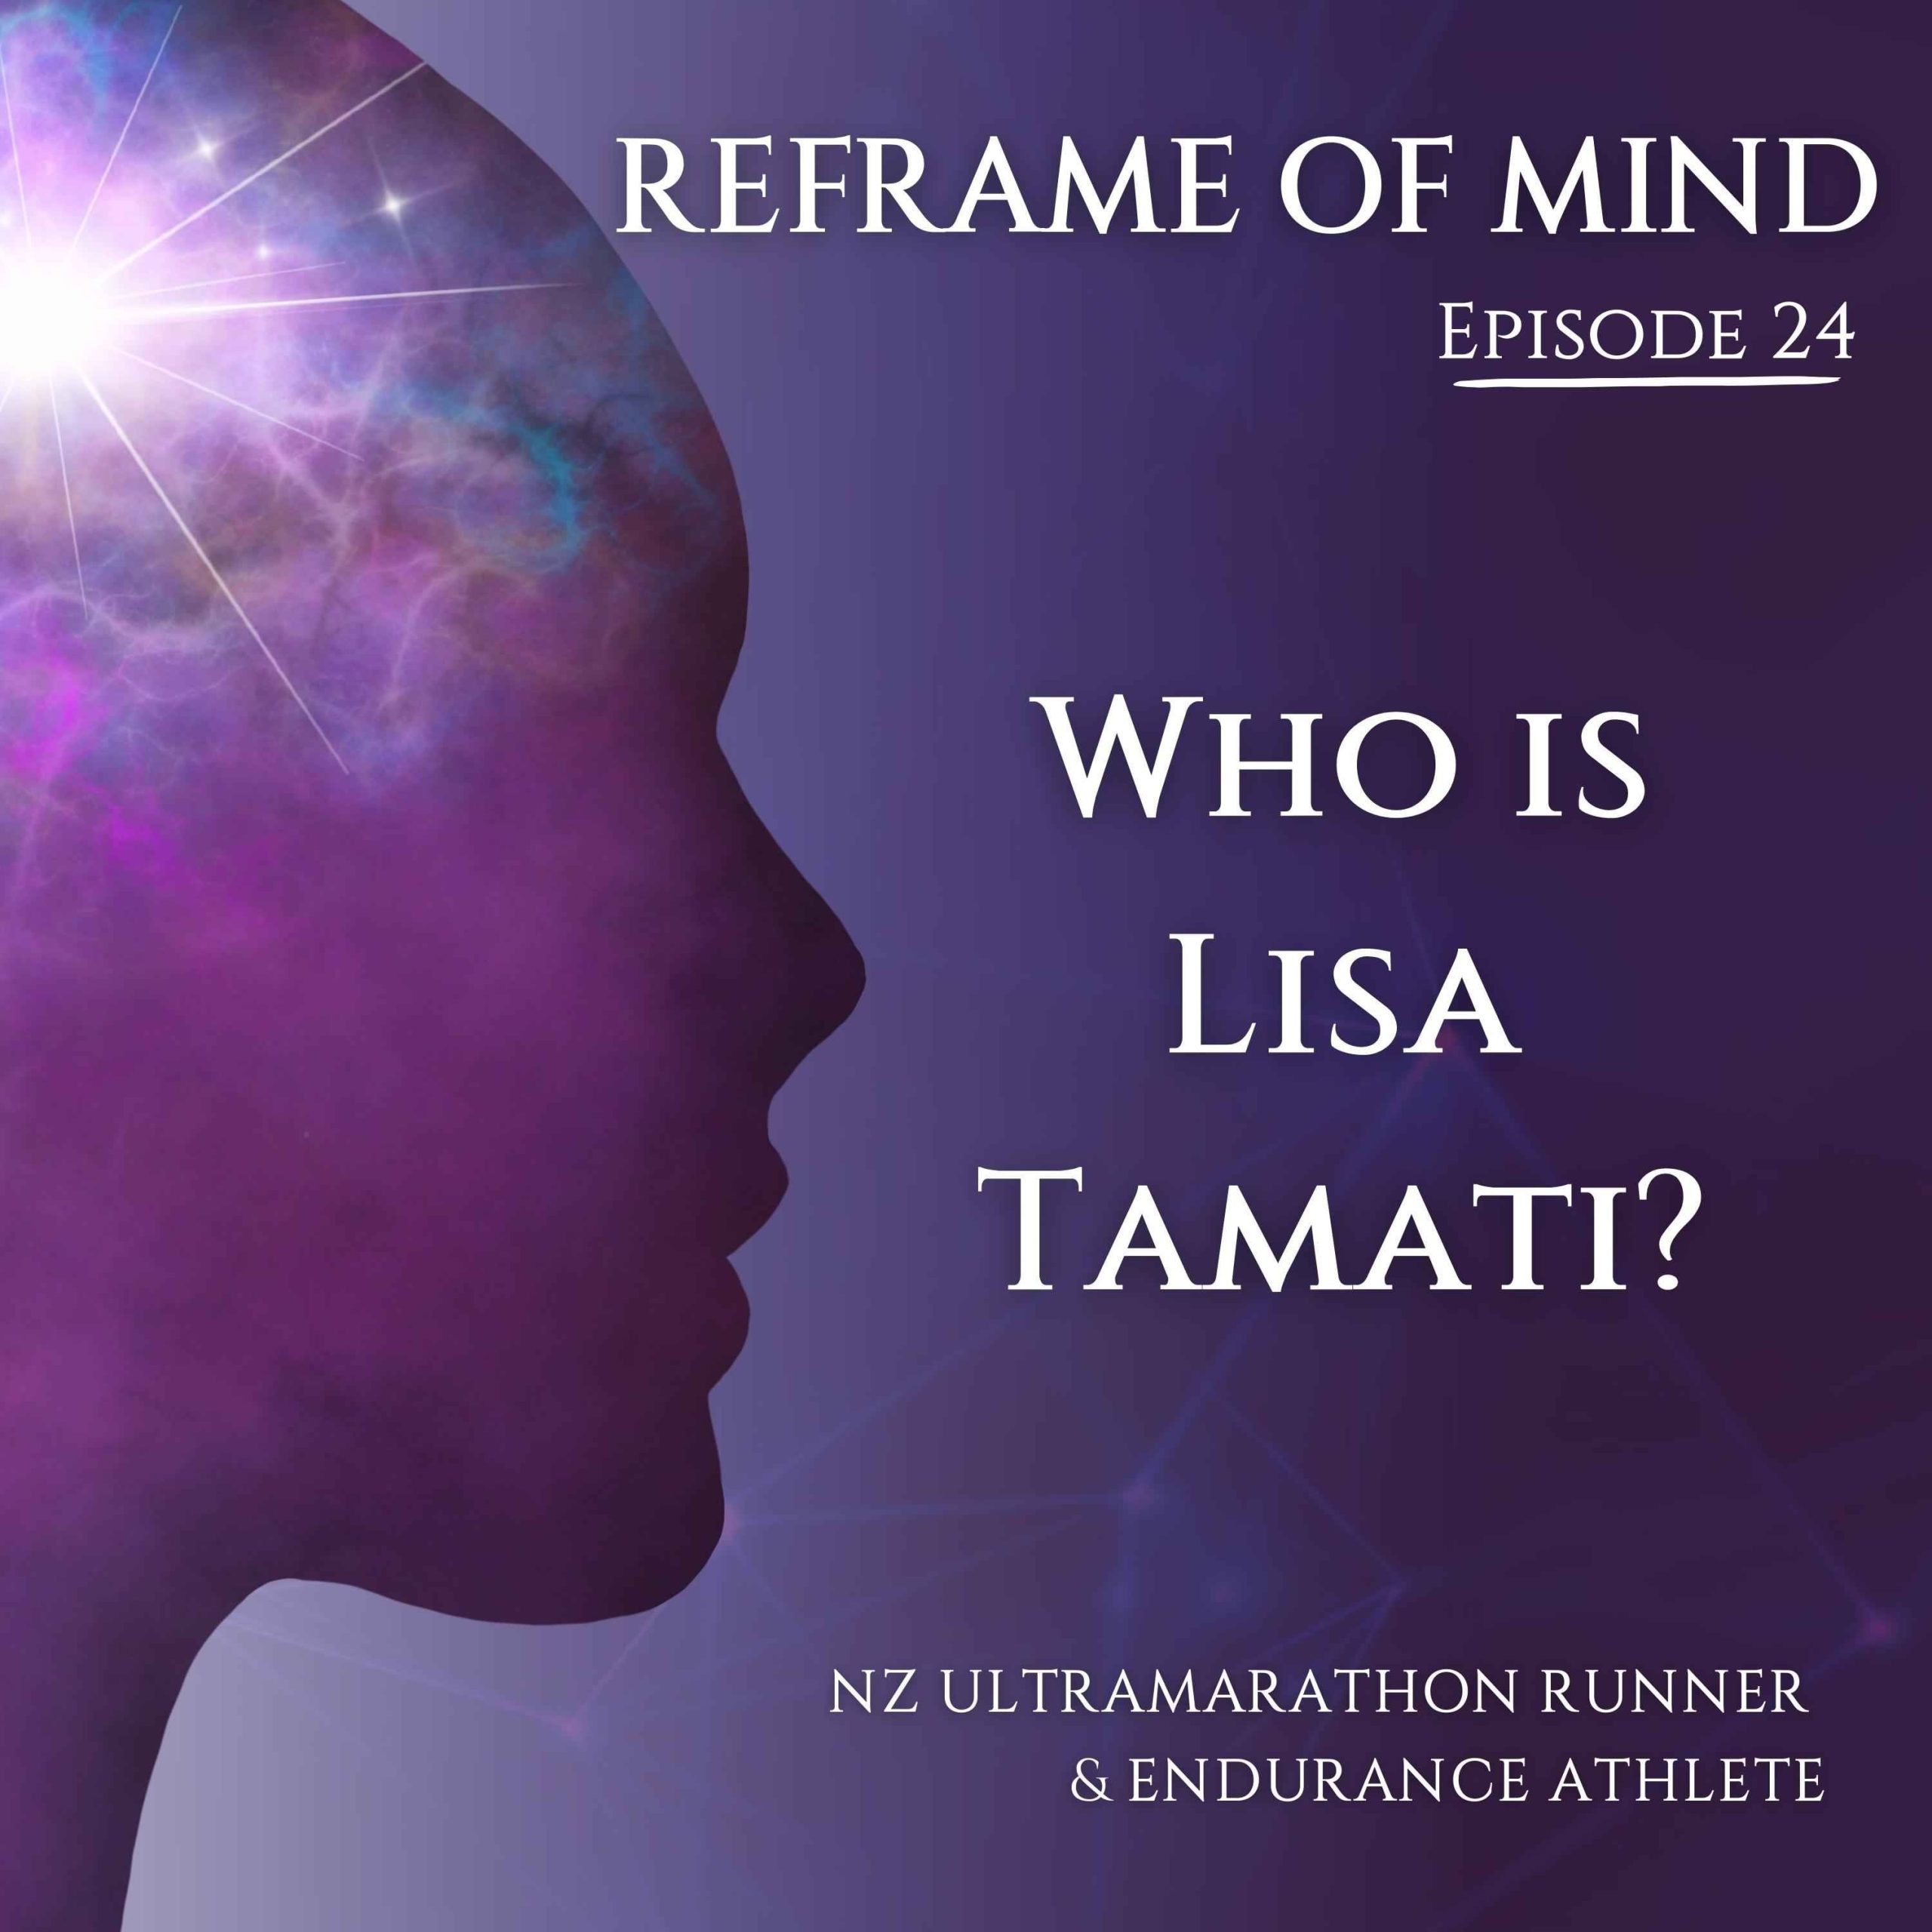 Who is Lisa Tamati?